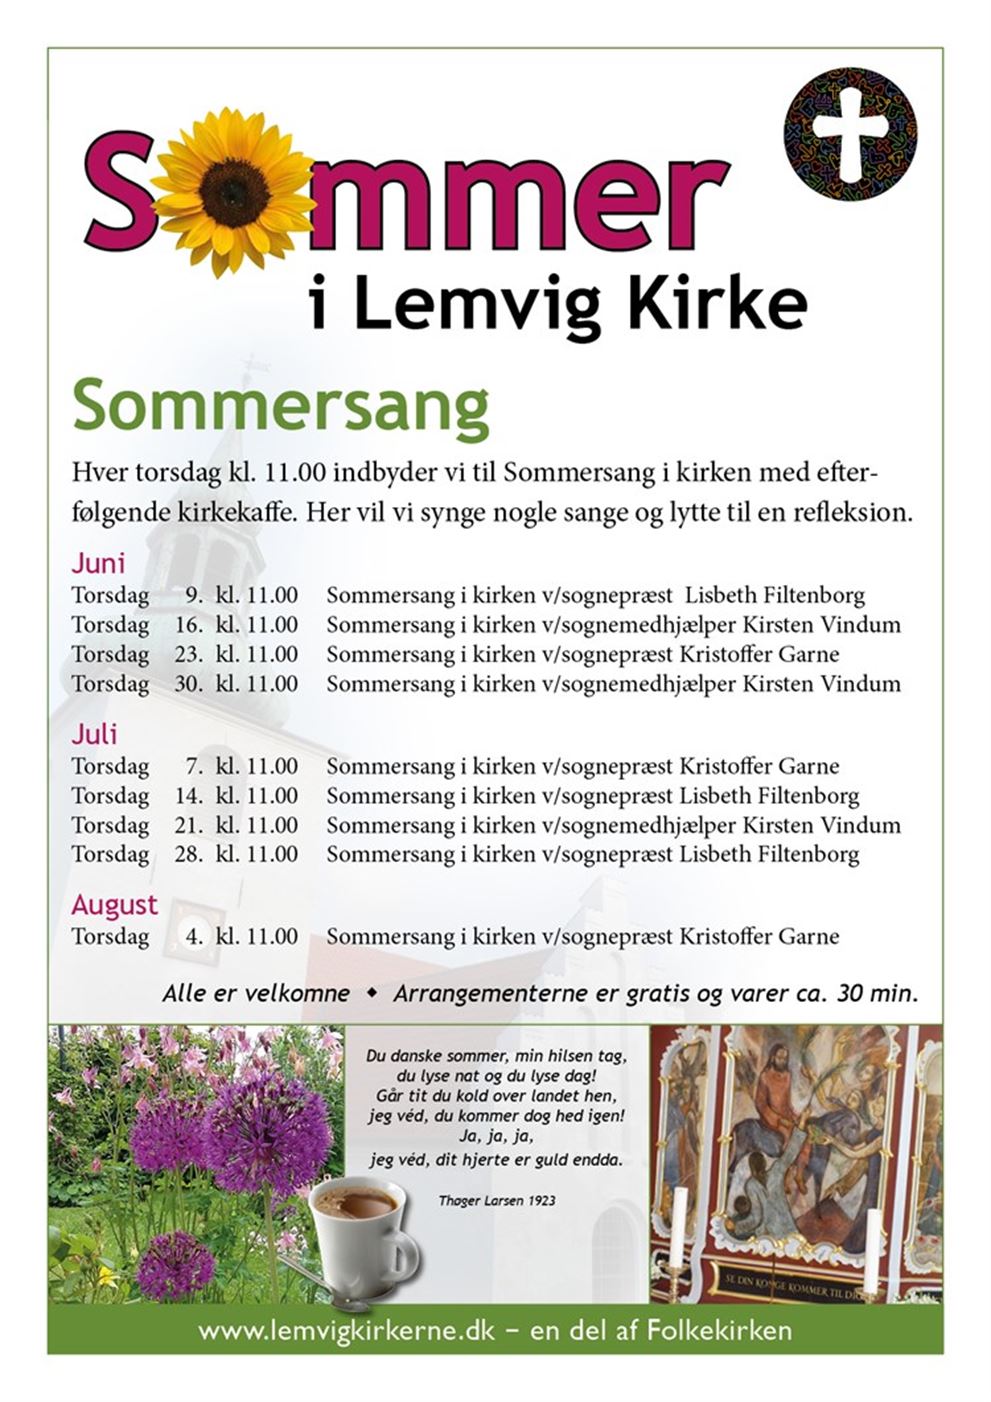 Sommersang Lemvig Kirke (14 juli)